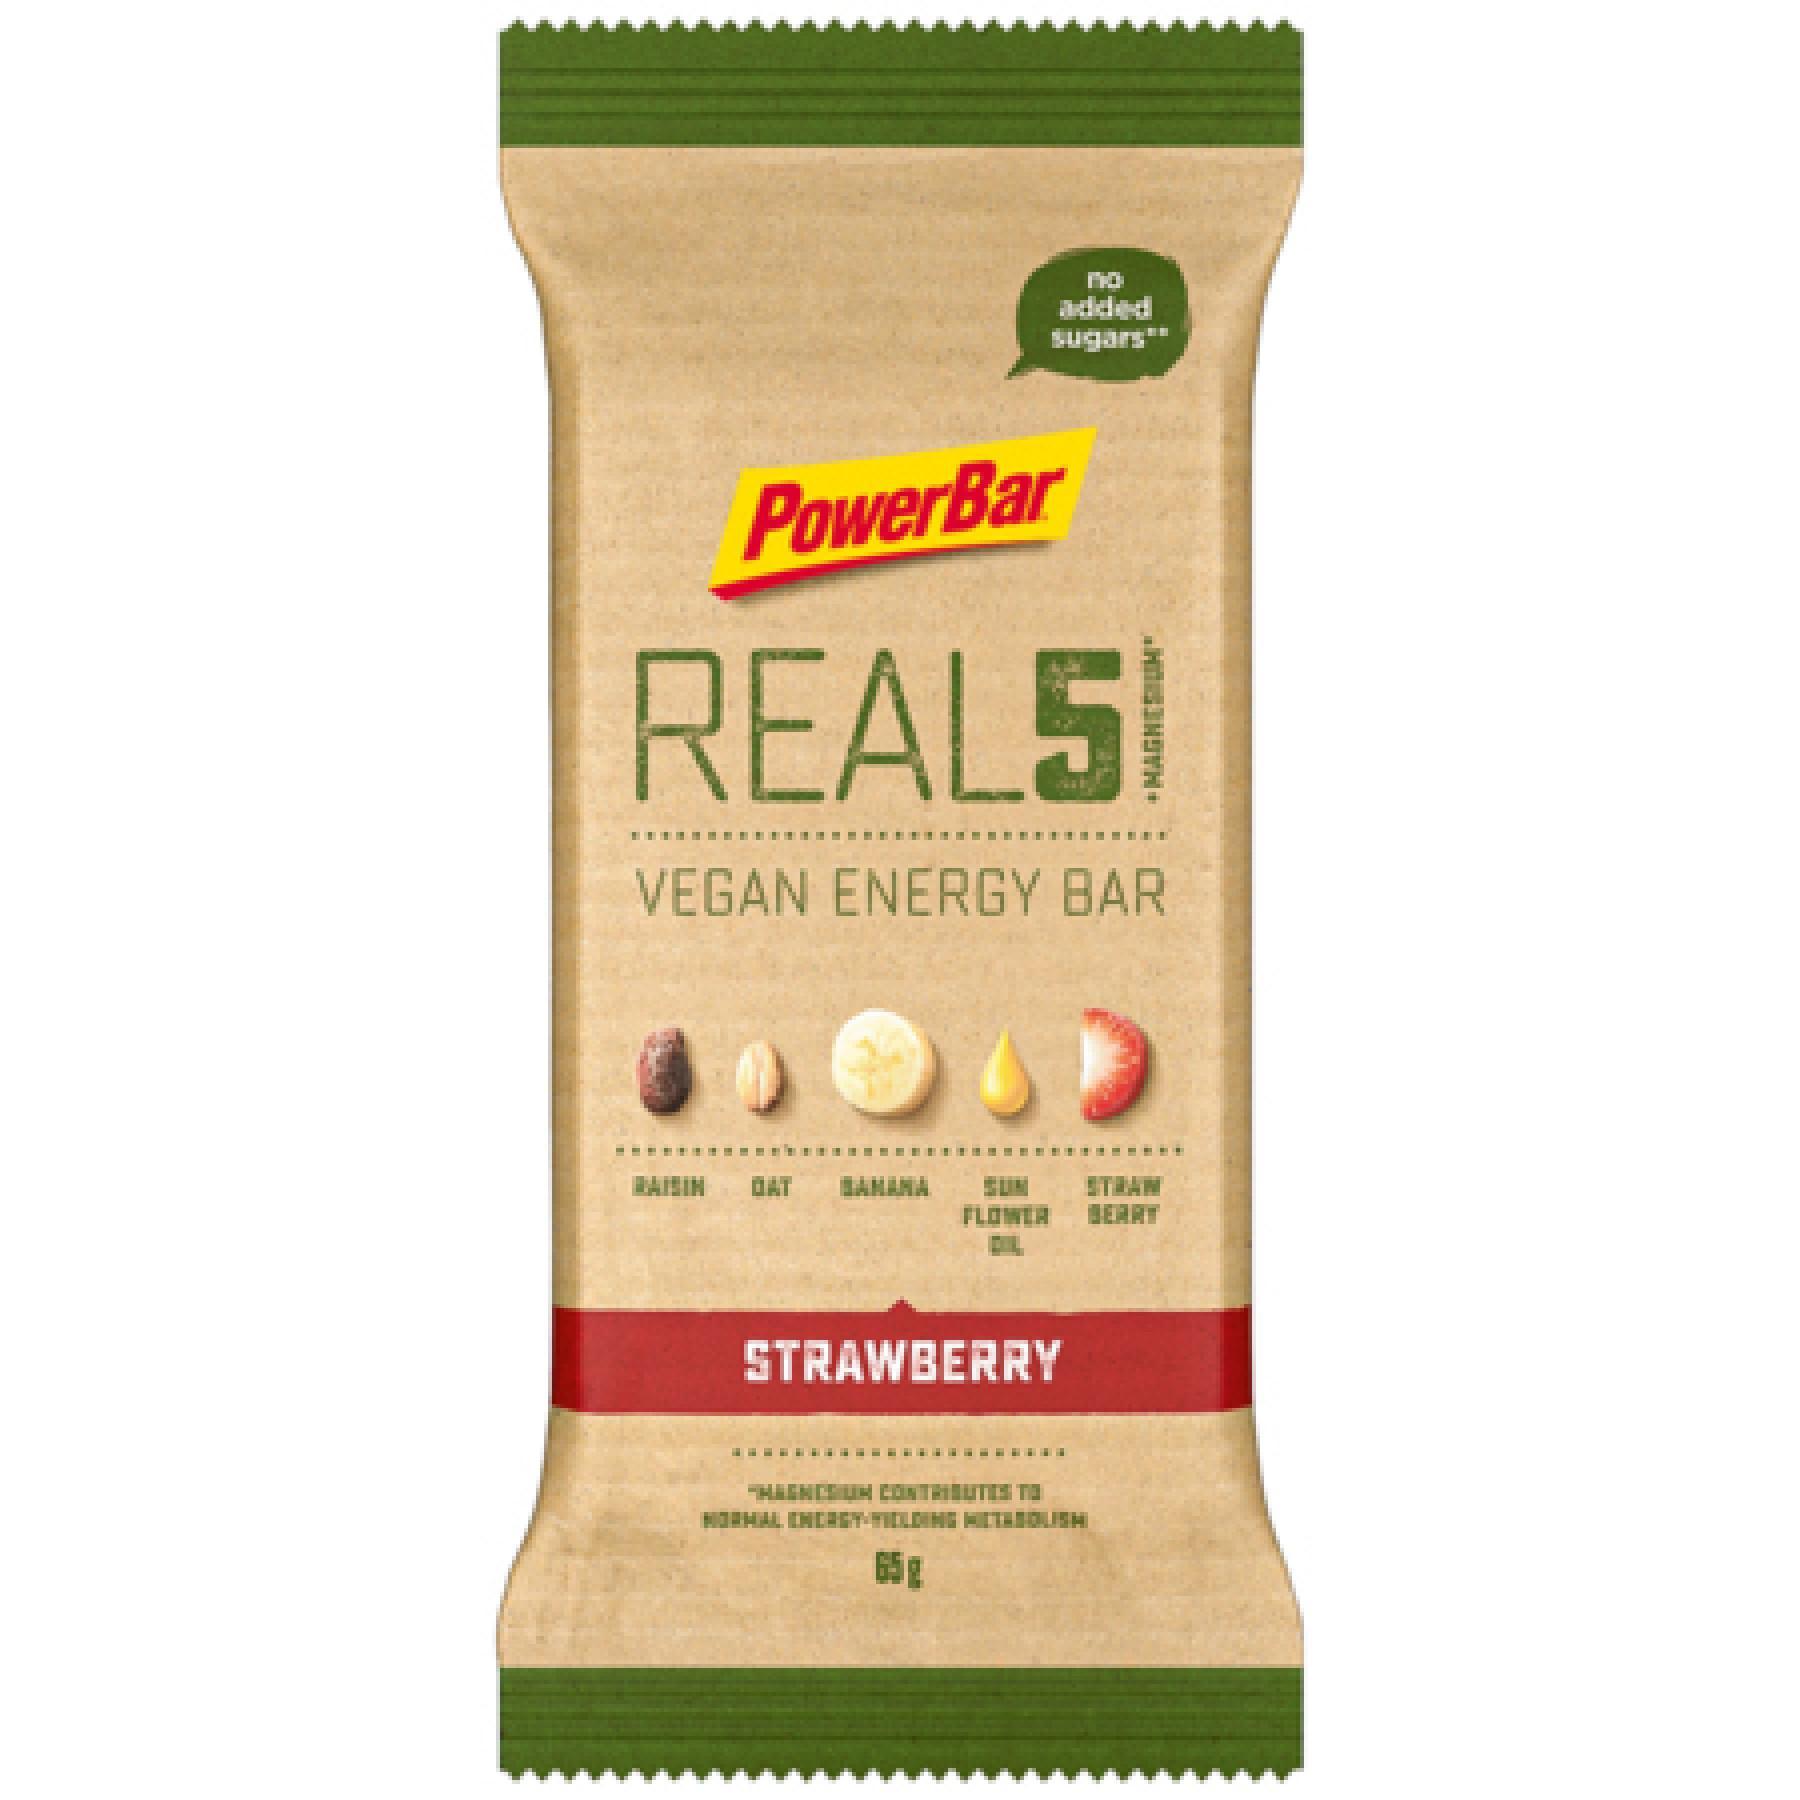 Bares PowerBar Real 5 Vegan Energy Bar 18x65gr Strawberry